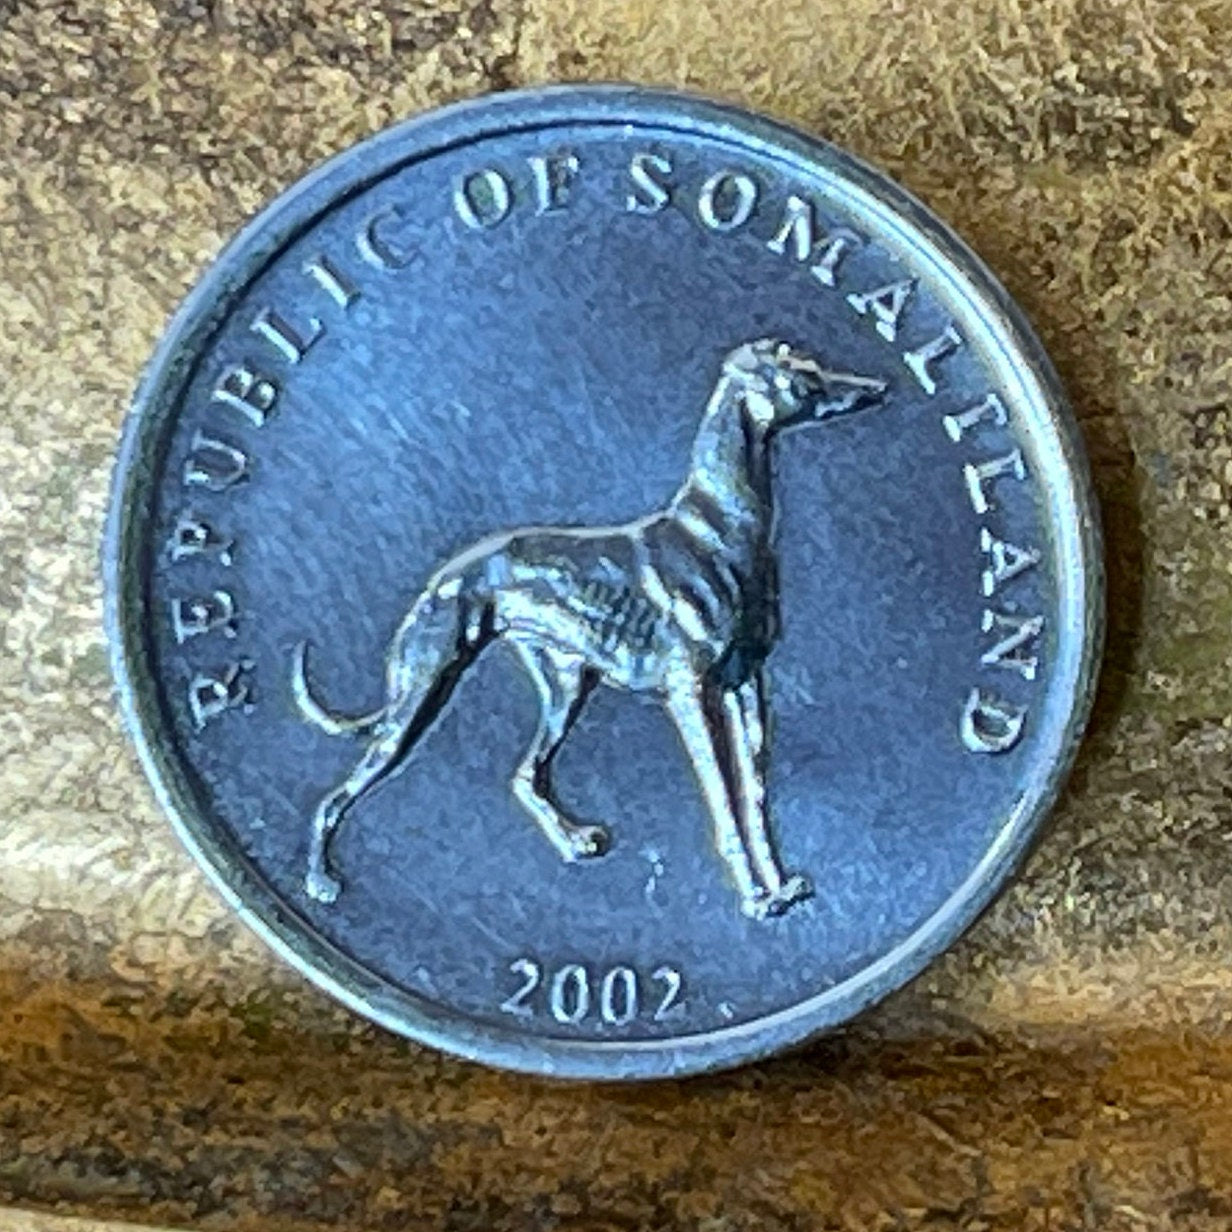 Big Cat & Dog Coins